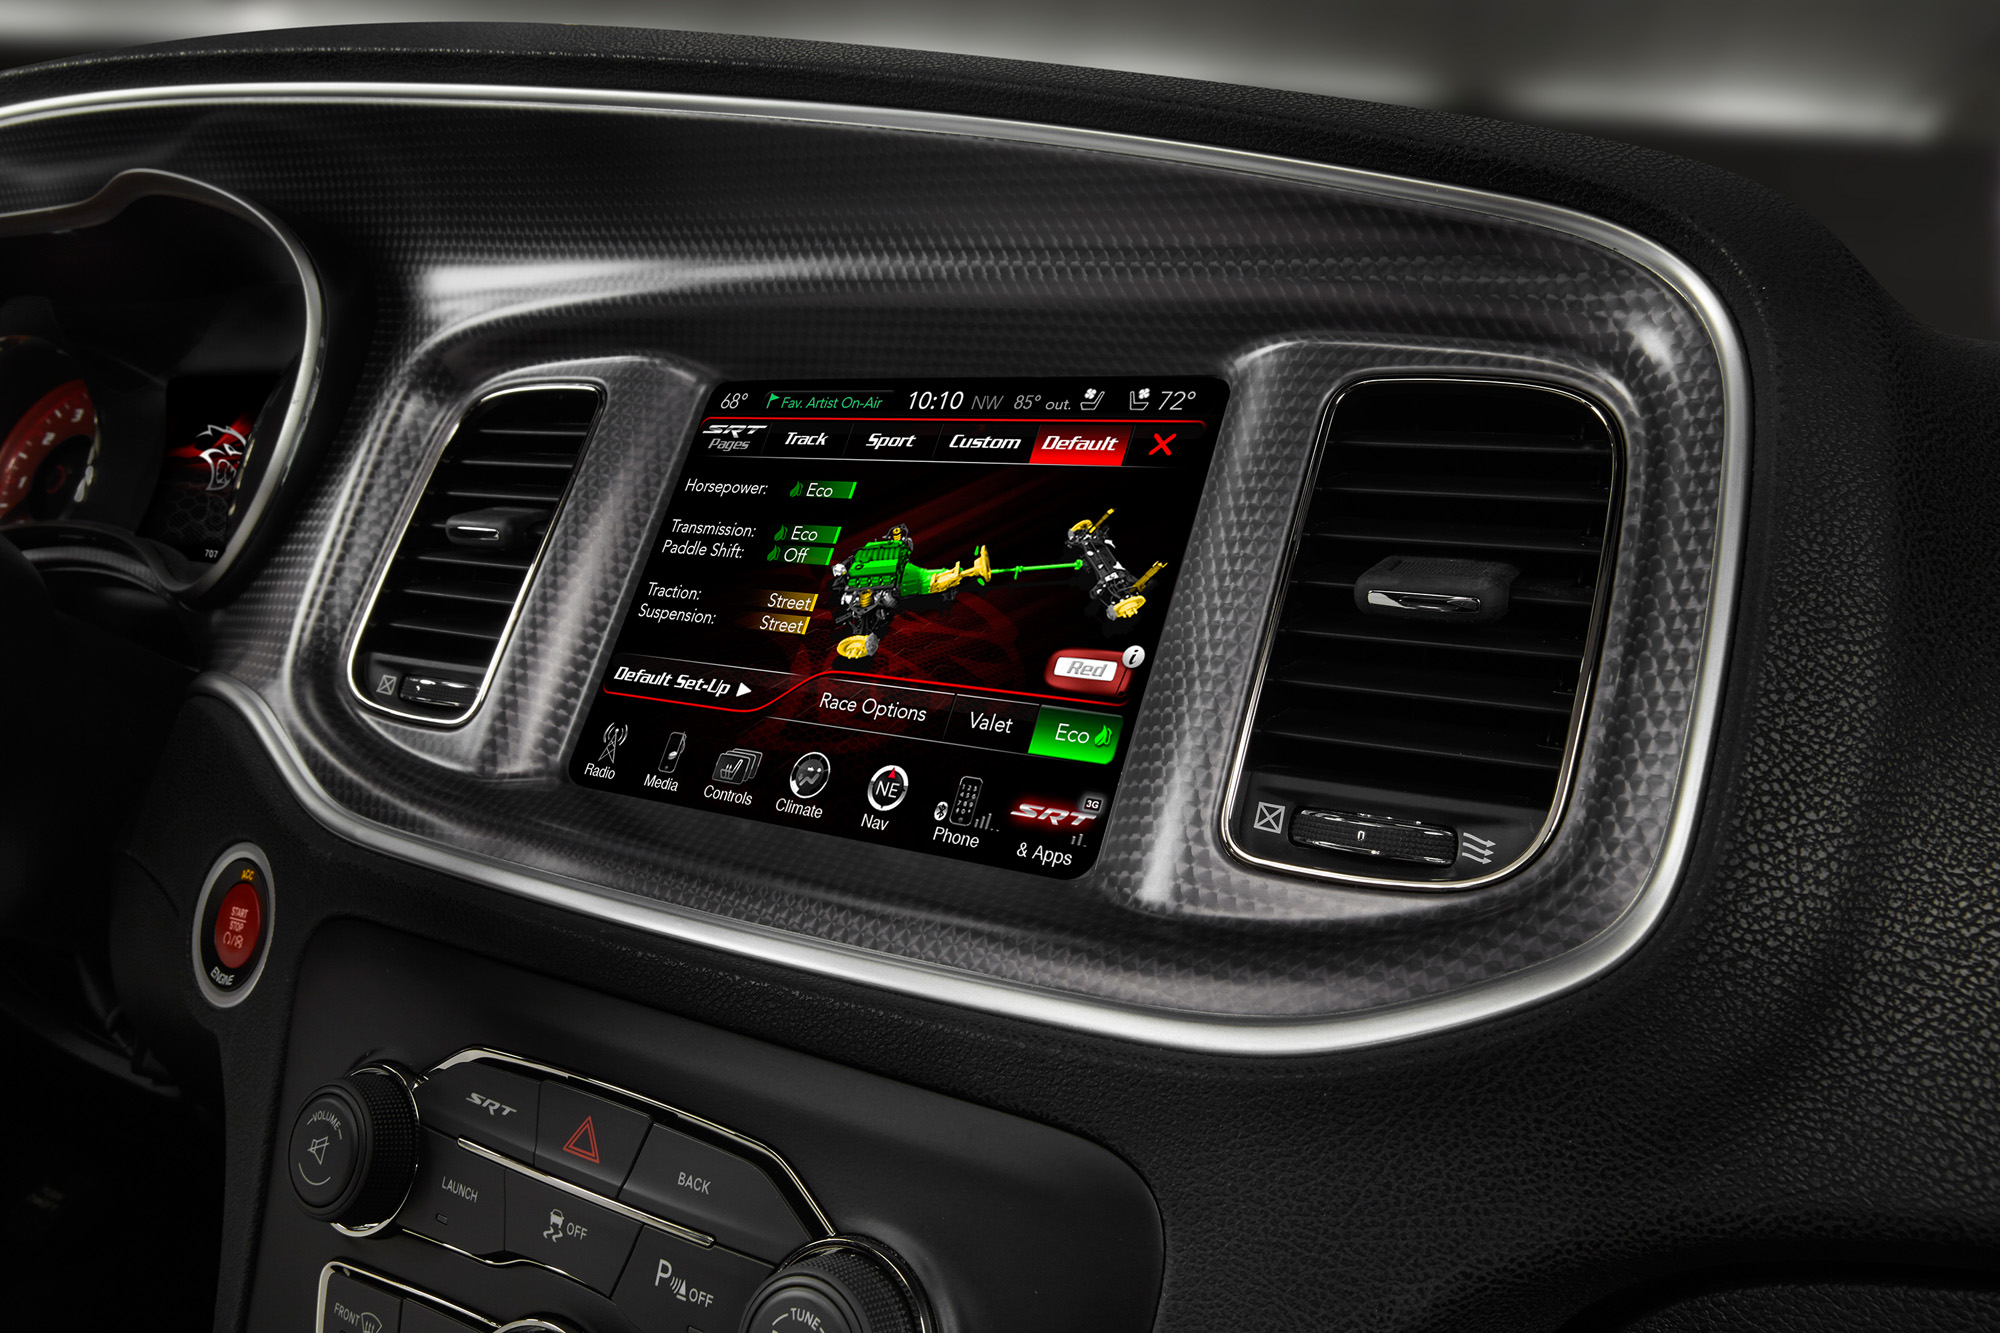 2015 Dodge Charger SRT - Default Eco Setup screen